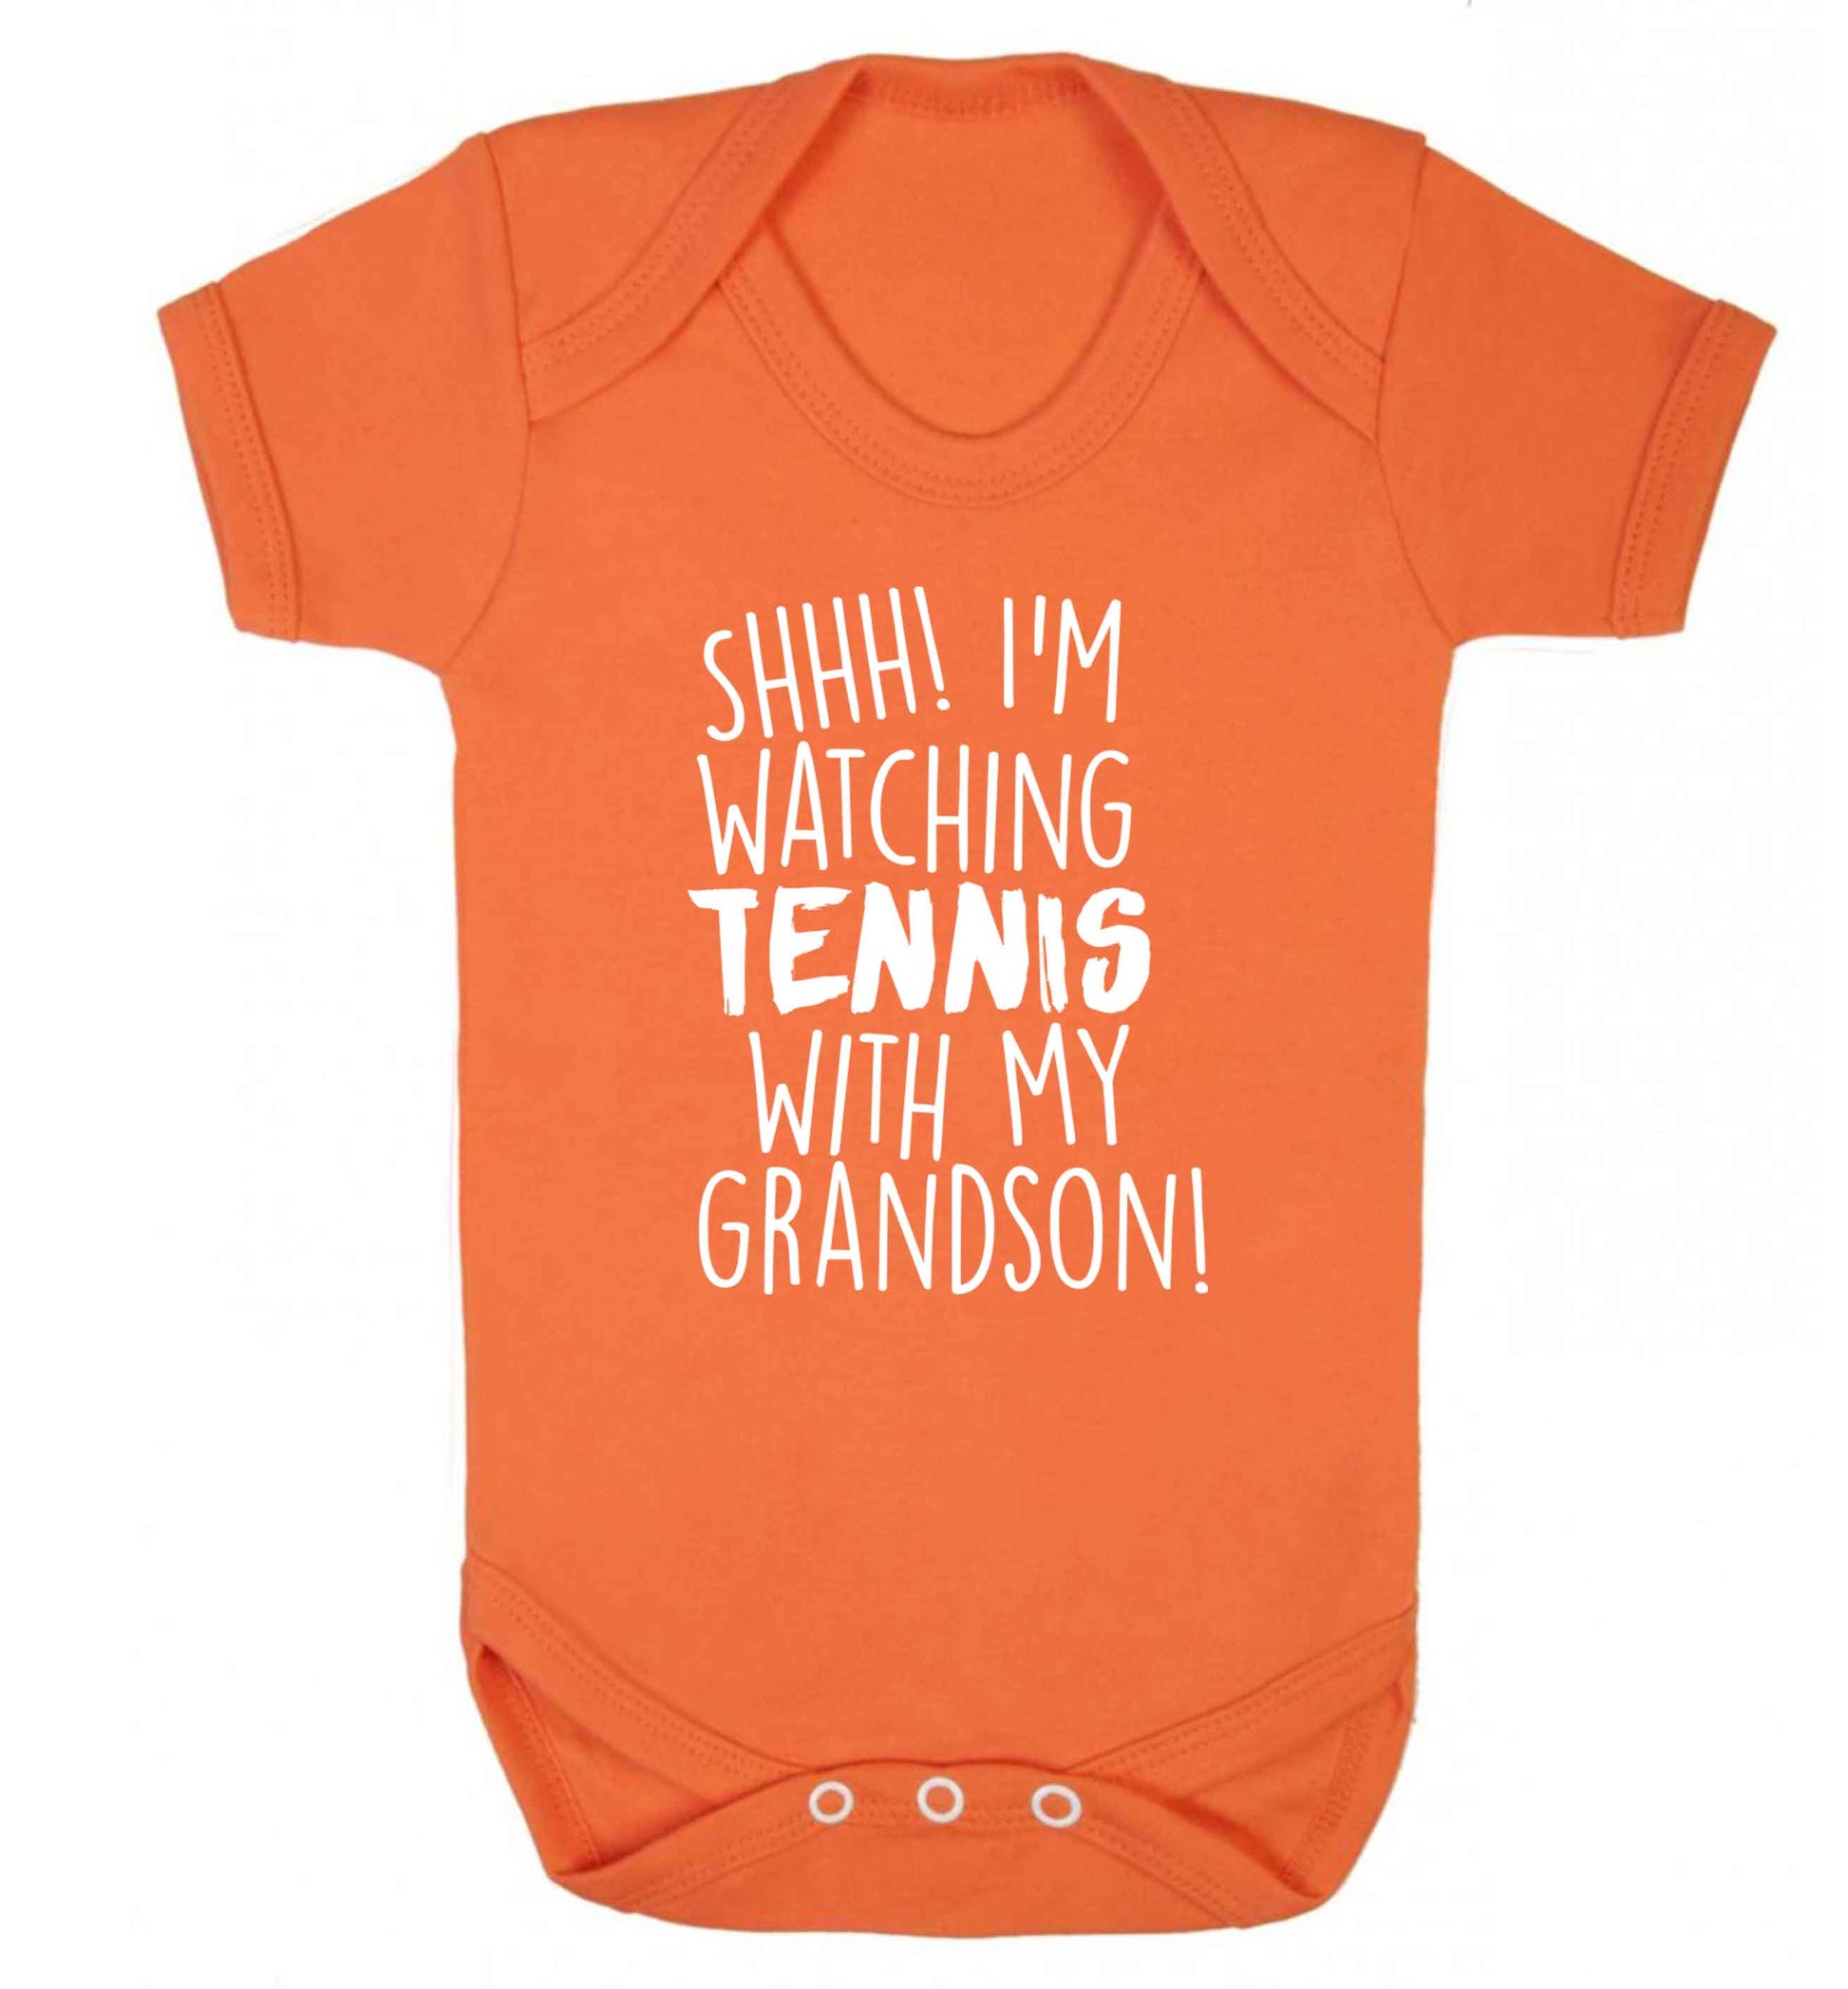 Shh! I'm watching tennis with my grandson! Baby Vest orange 18-24 months